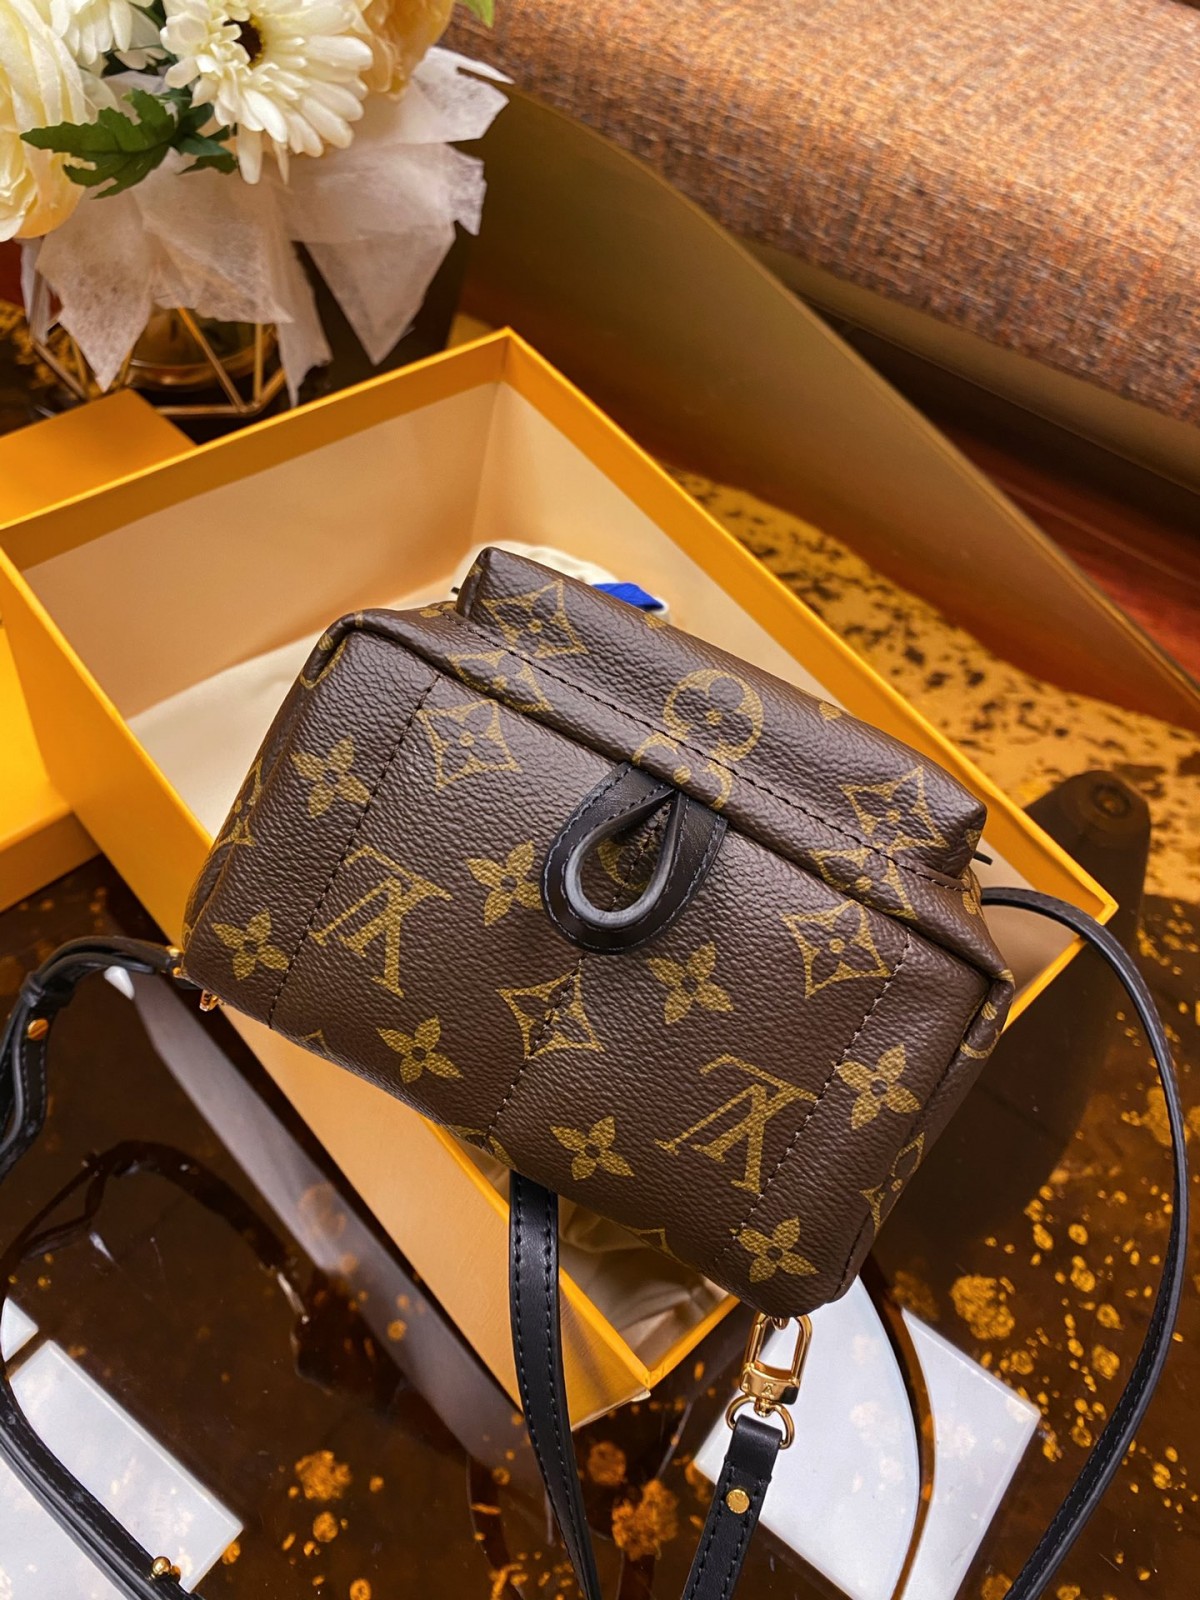 Louis Vuitton Taschen Rucksack Replik Bewertungen (2022 aktualisiert)-Beste Qualität Fake Louis Vuitton Bag Online Store, Replik Designer Tasche ru